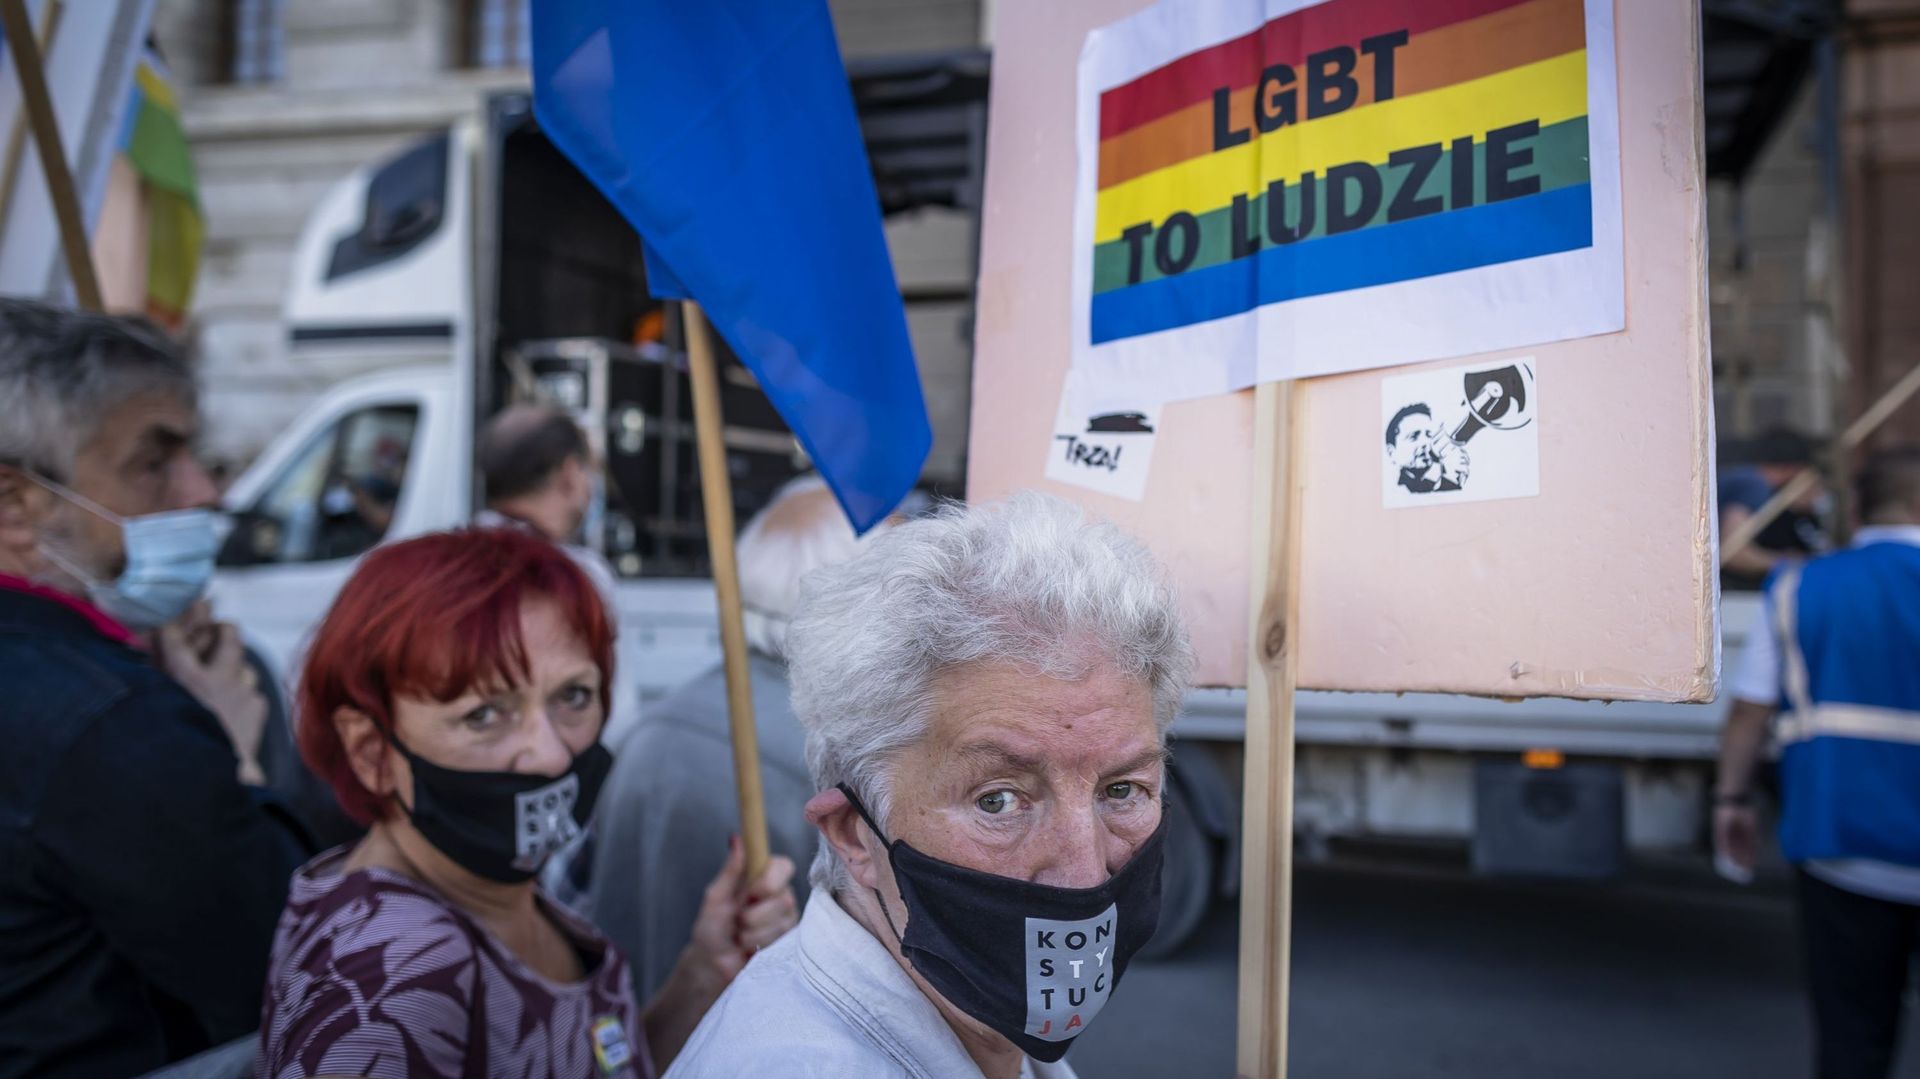 Droits des LGBTI : l’UE refuse des subventions à des villes polonaises